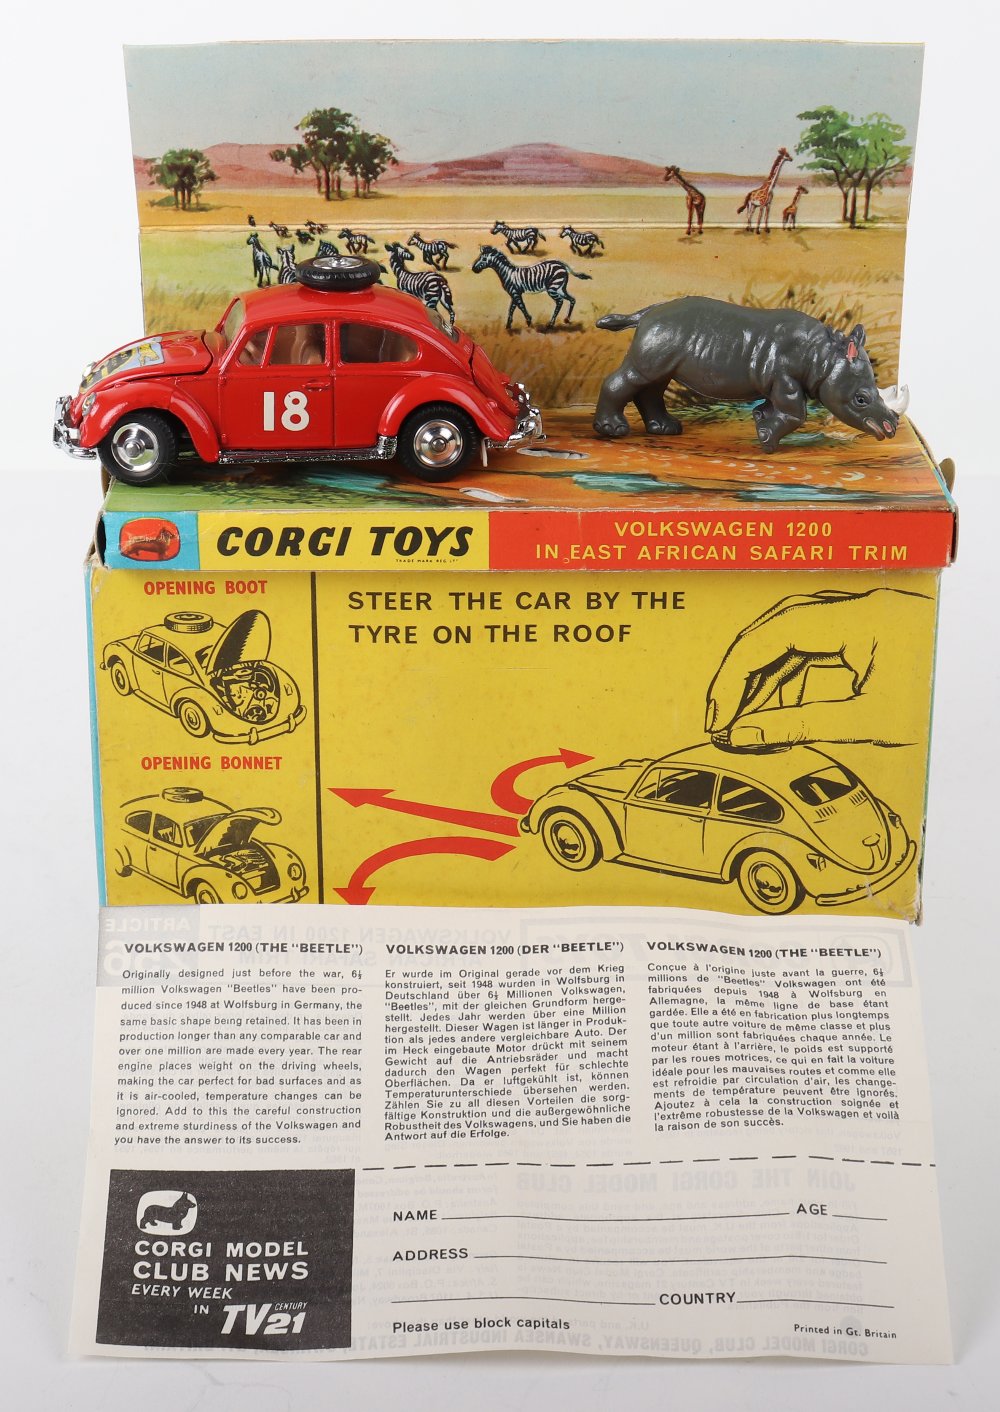 Corgi Toys 256 Volkswagen 1200 in East African Safari Trim - Image 2 of 9